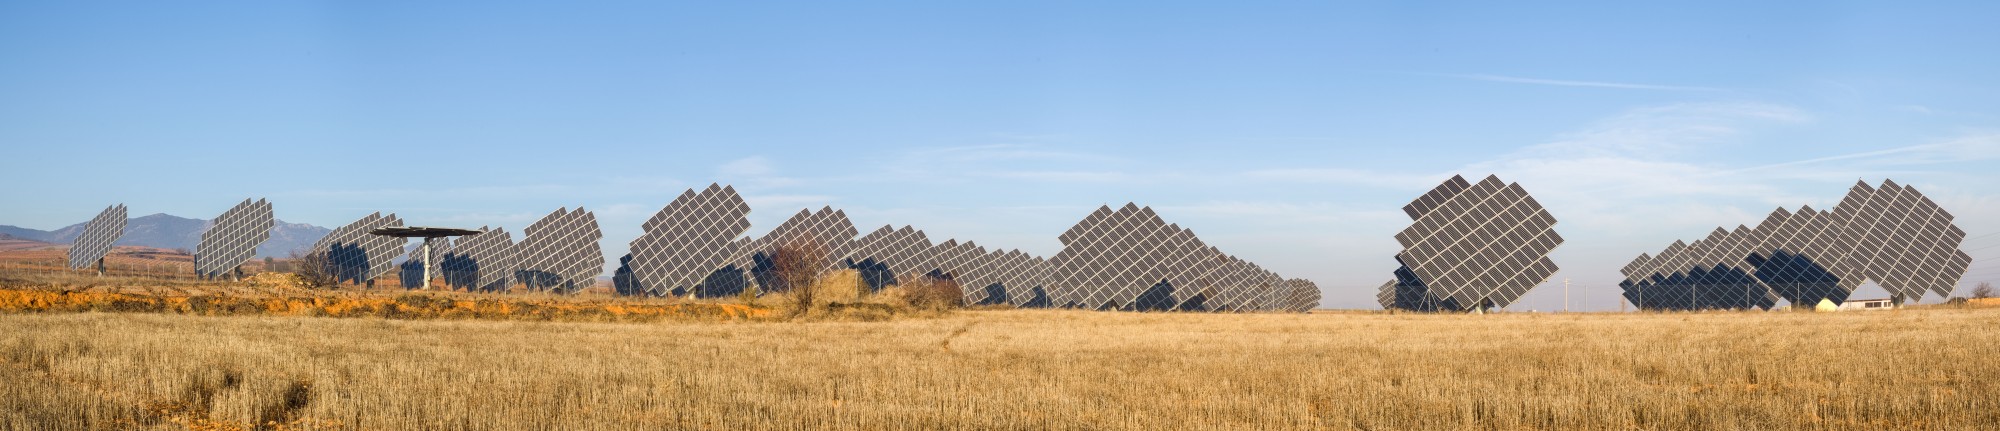 Paneles solares en Cariñena, España, 2015-01-08, DD 03-08 PAN